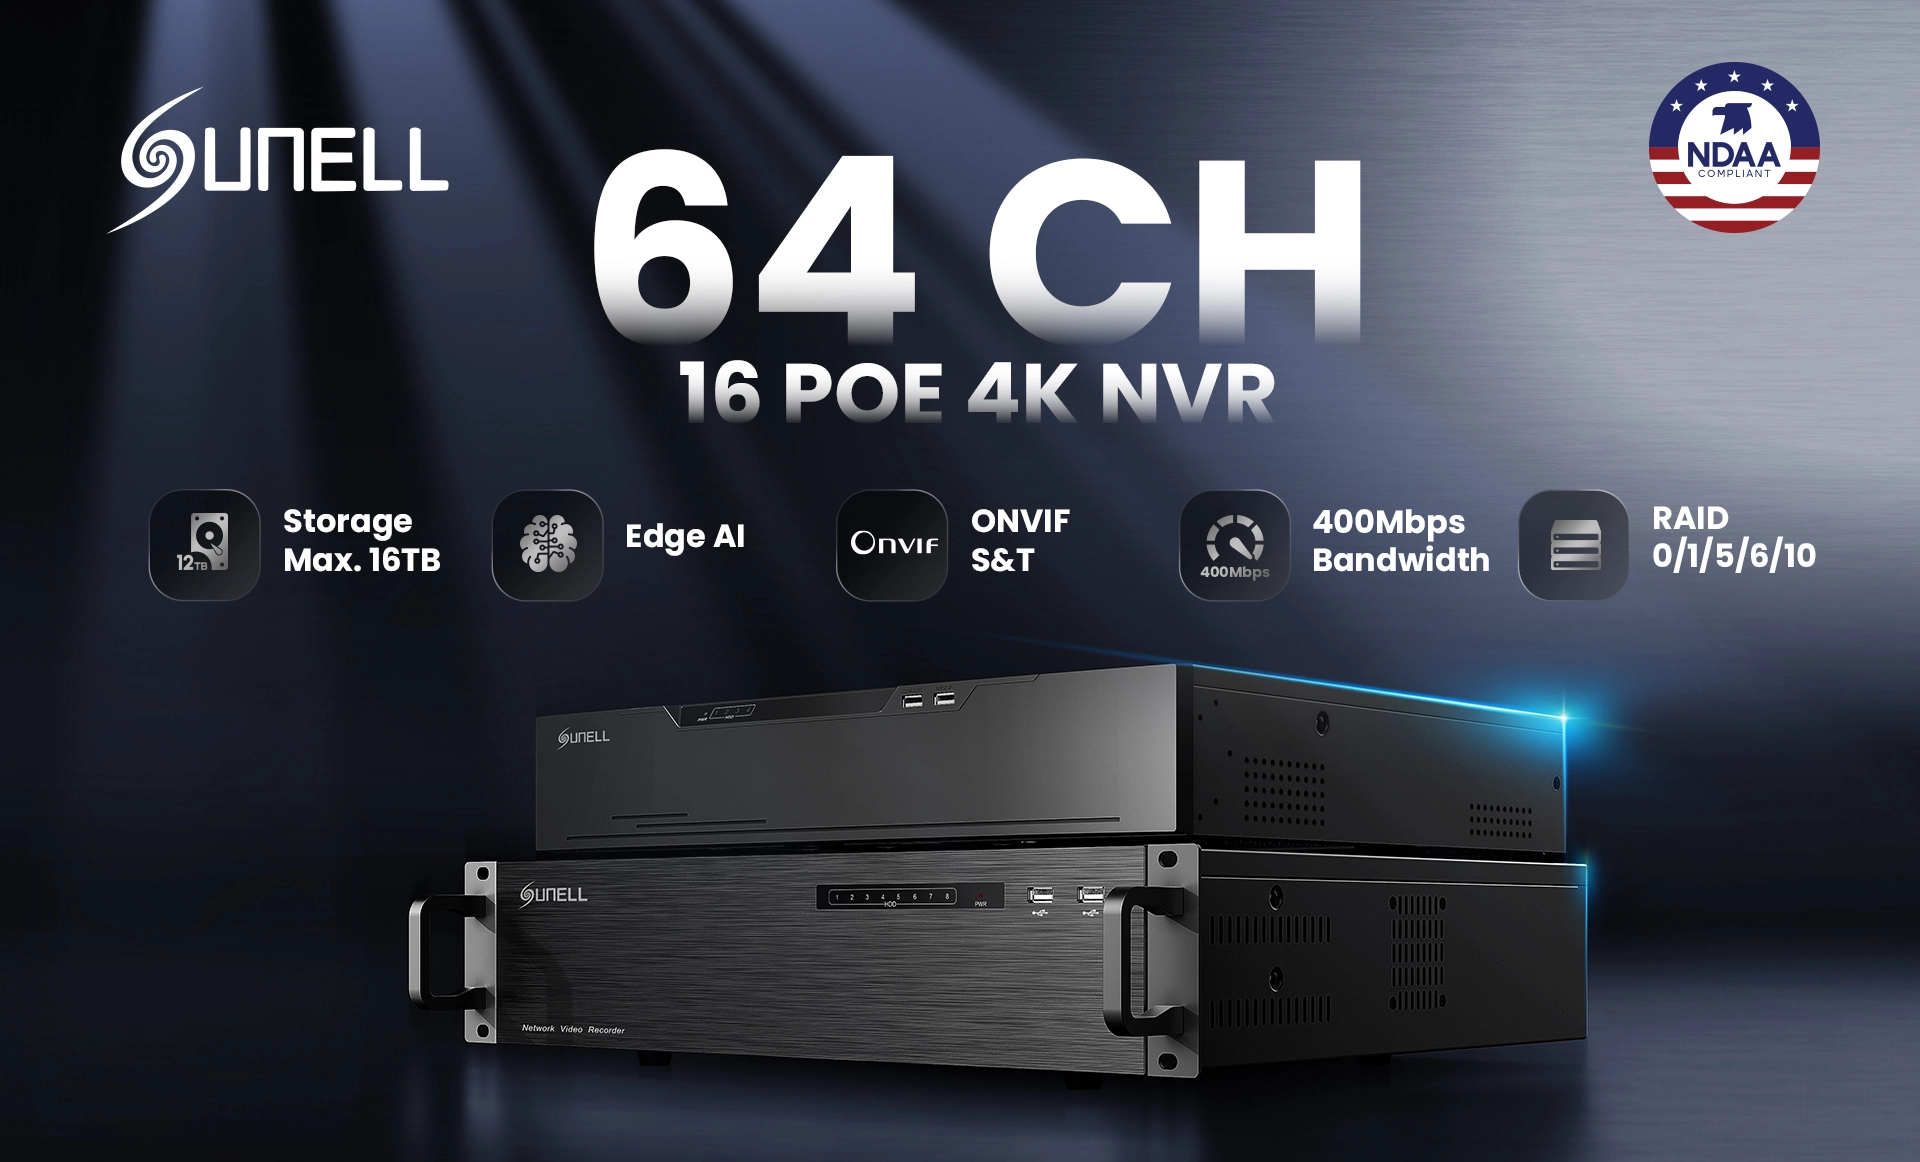 Sunellが、比類のない監視ソリューション向けの新世代64-CH POE AI NVRを発表